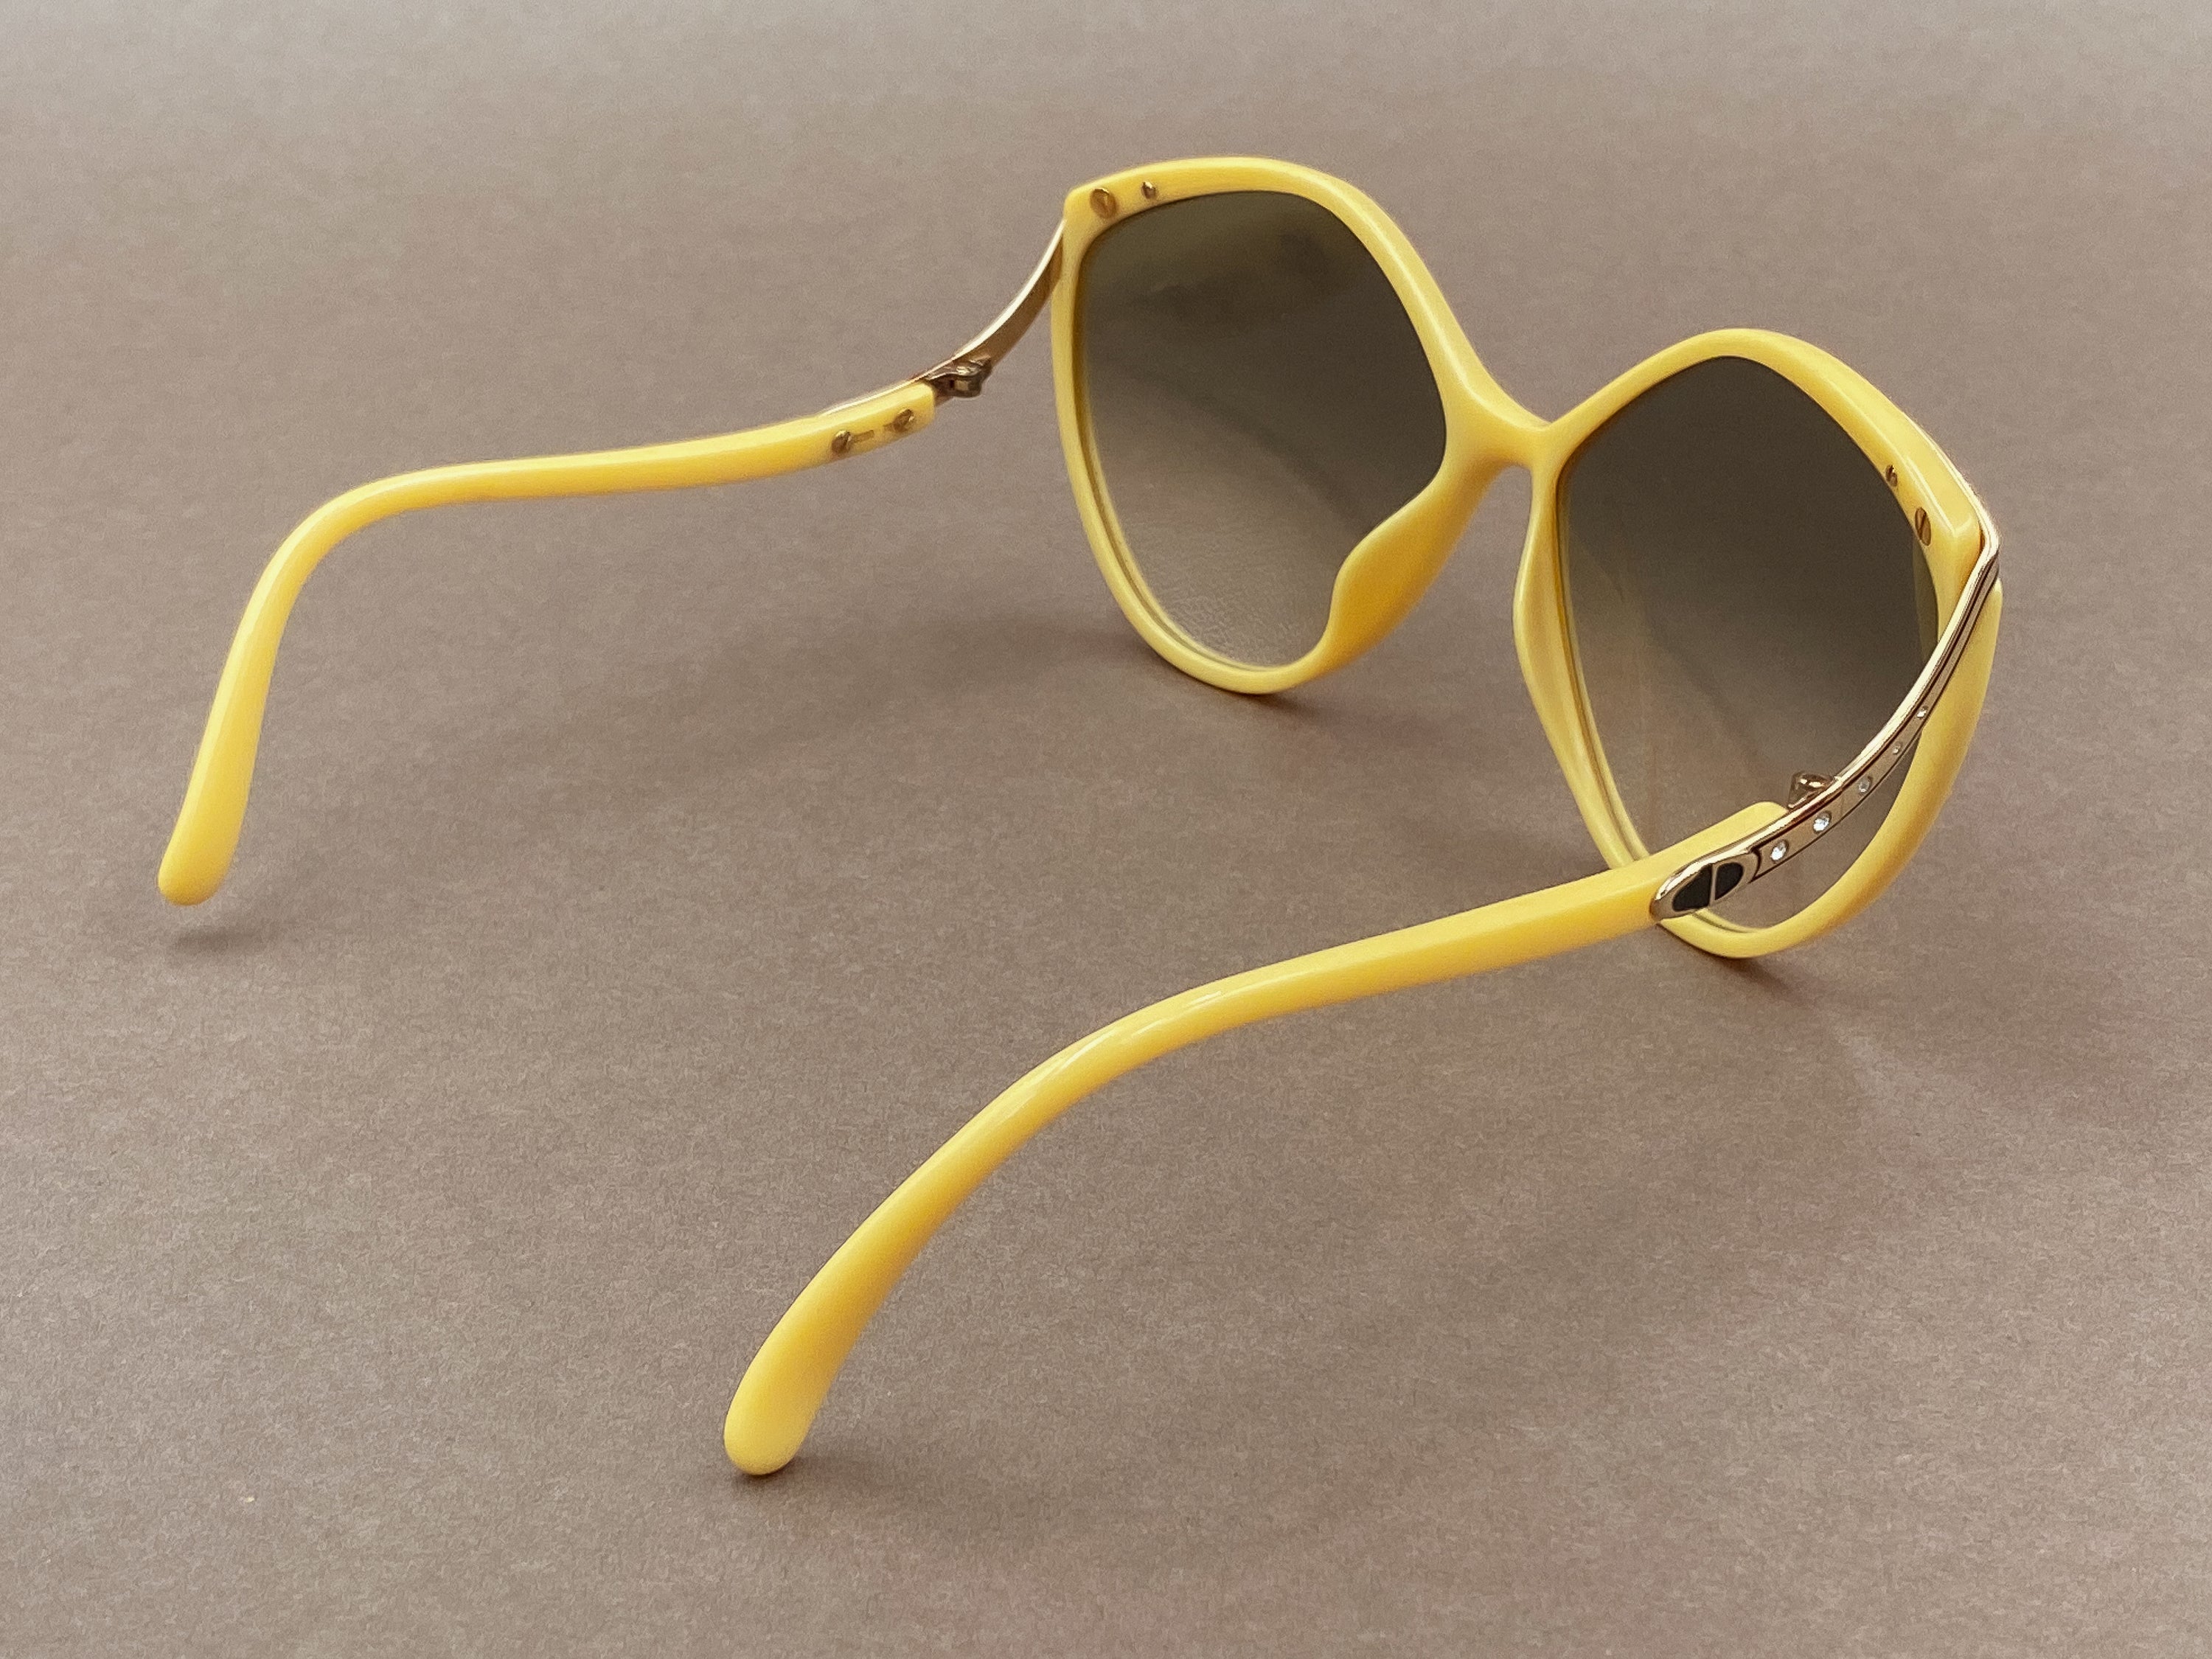 Christian Dior 2280 ladies sunglasses